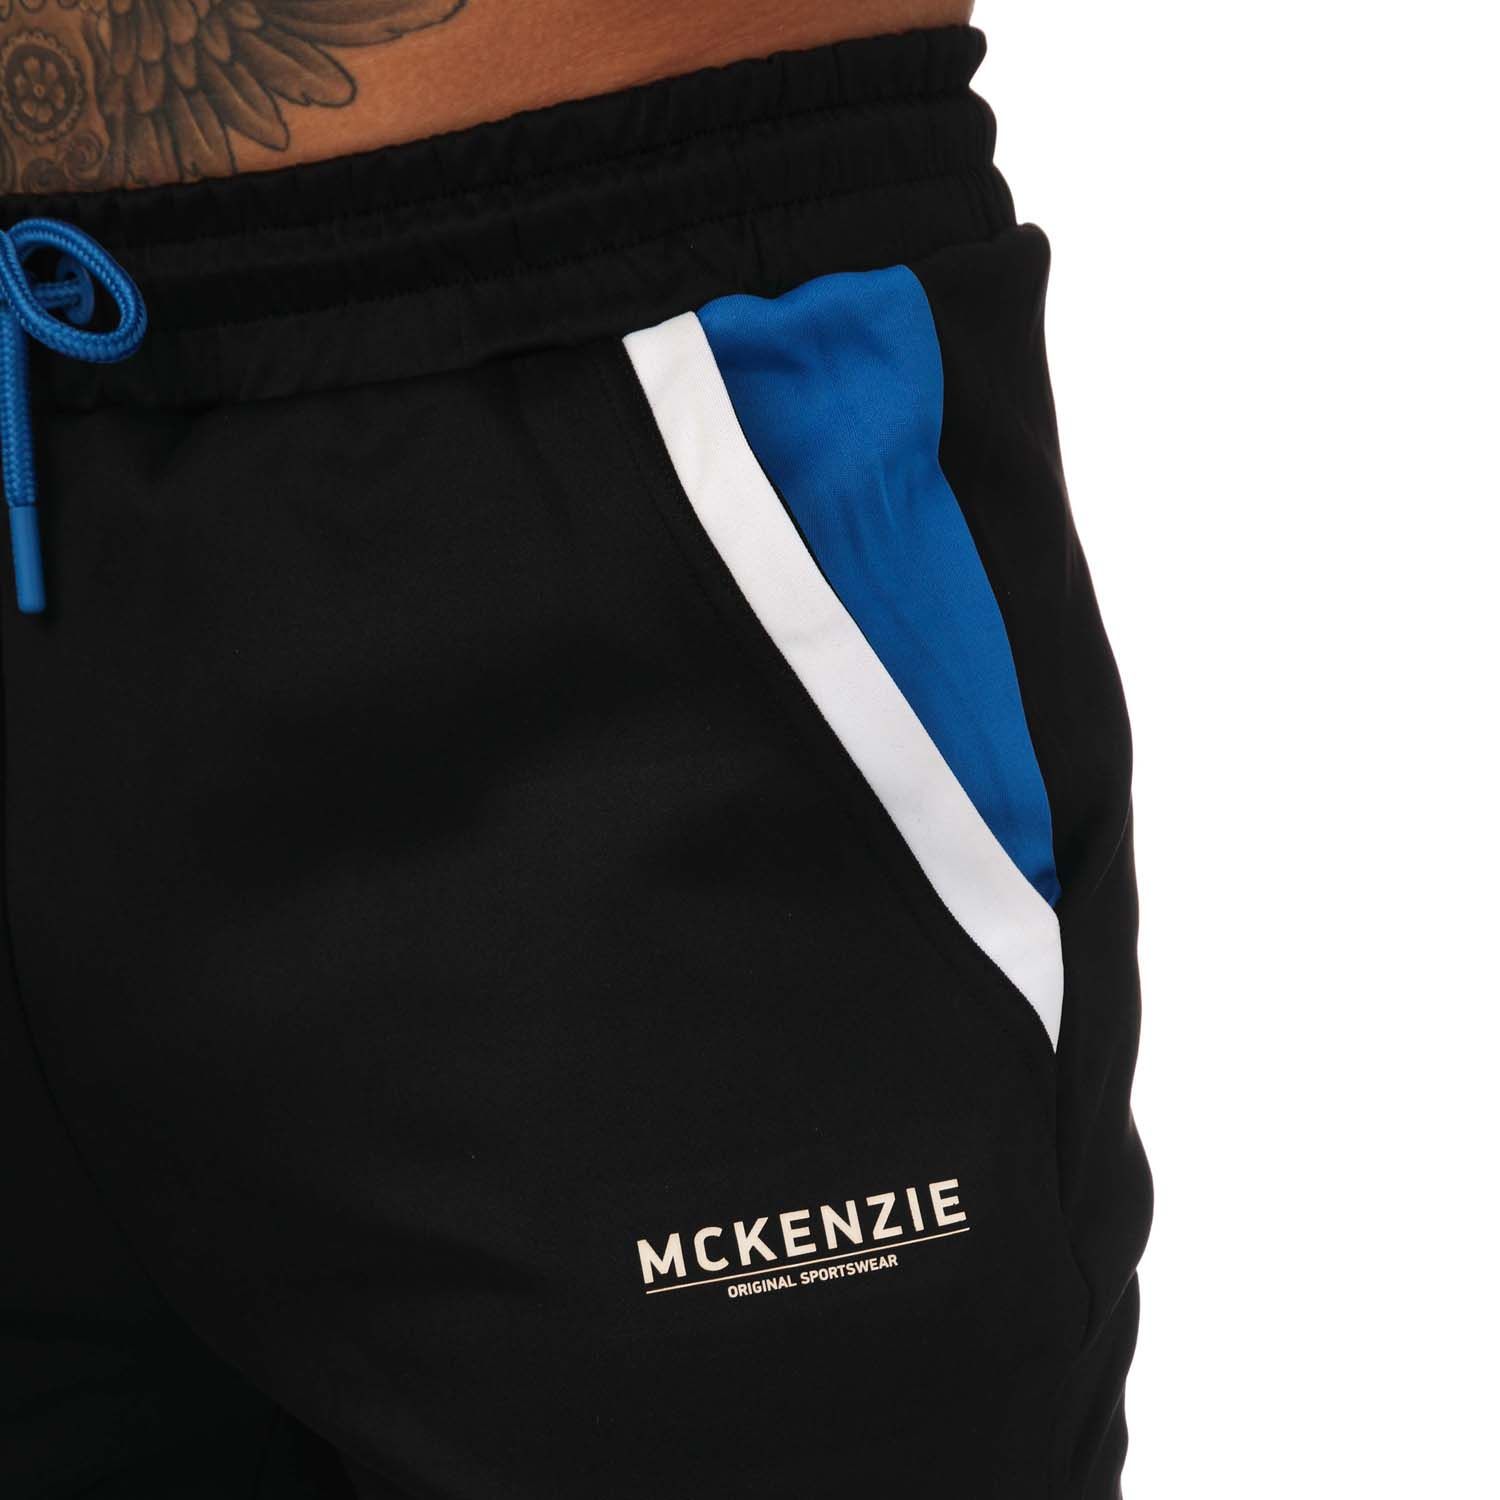 Mckenzie Joggingpak Shop Online